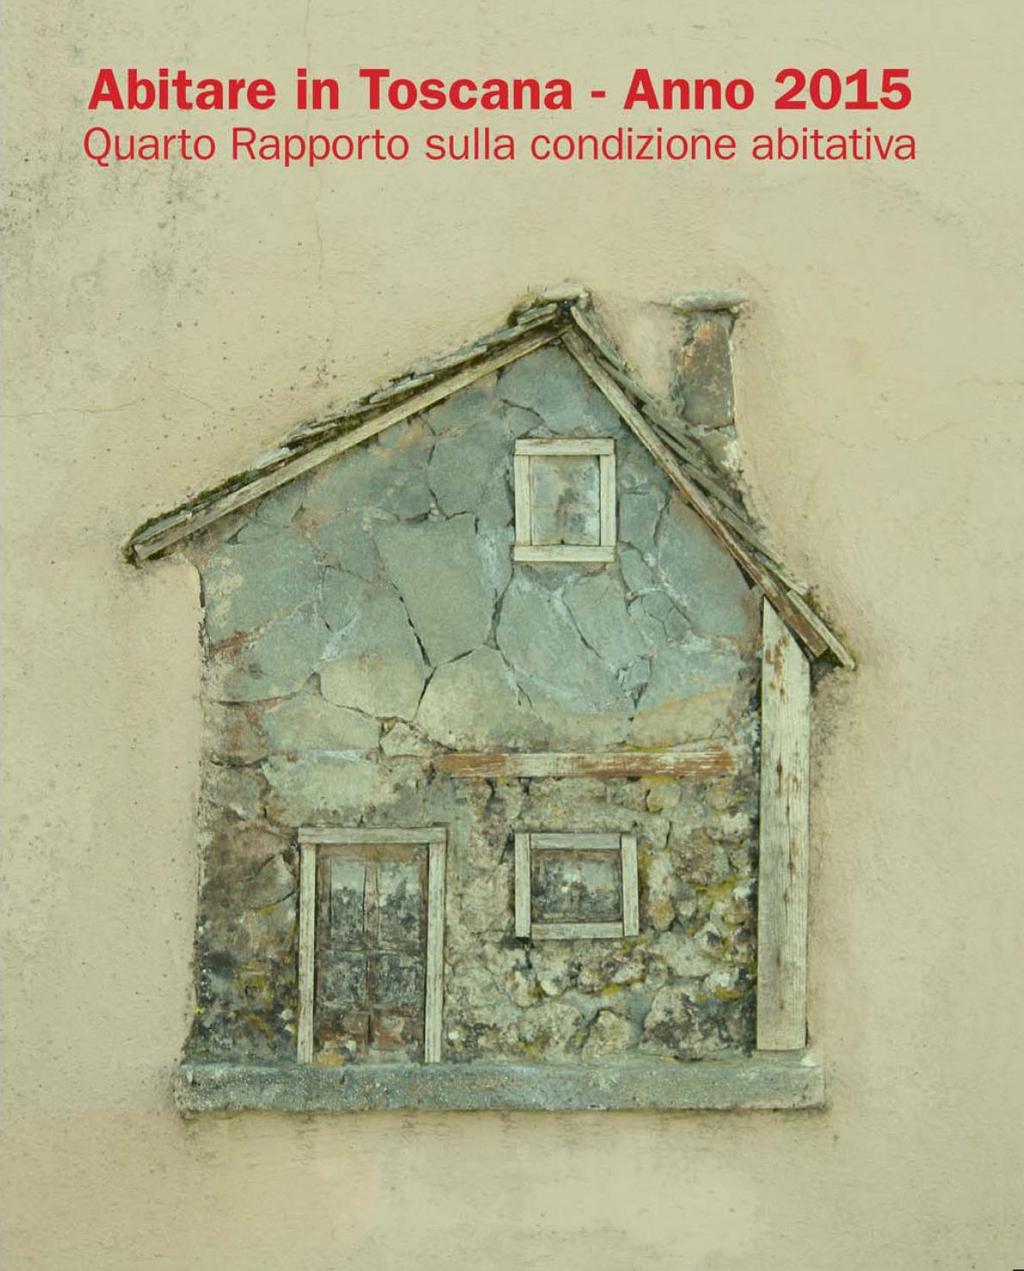 Seconda Conferenza sulla condizione abitativa in Toscana Firenze, 12 febbraio 2016 Luca Caterino Paolo Sambo Il Rapporto